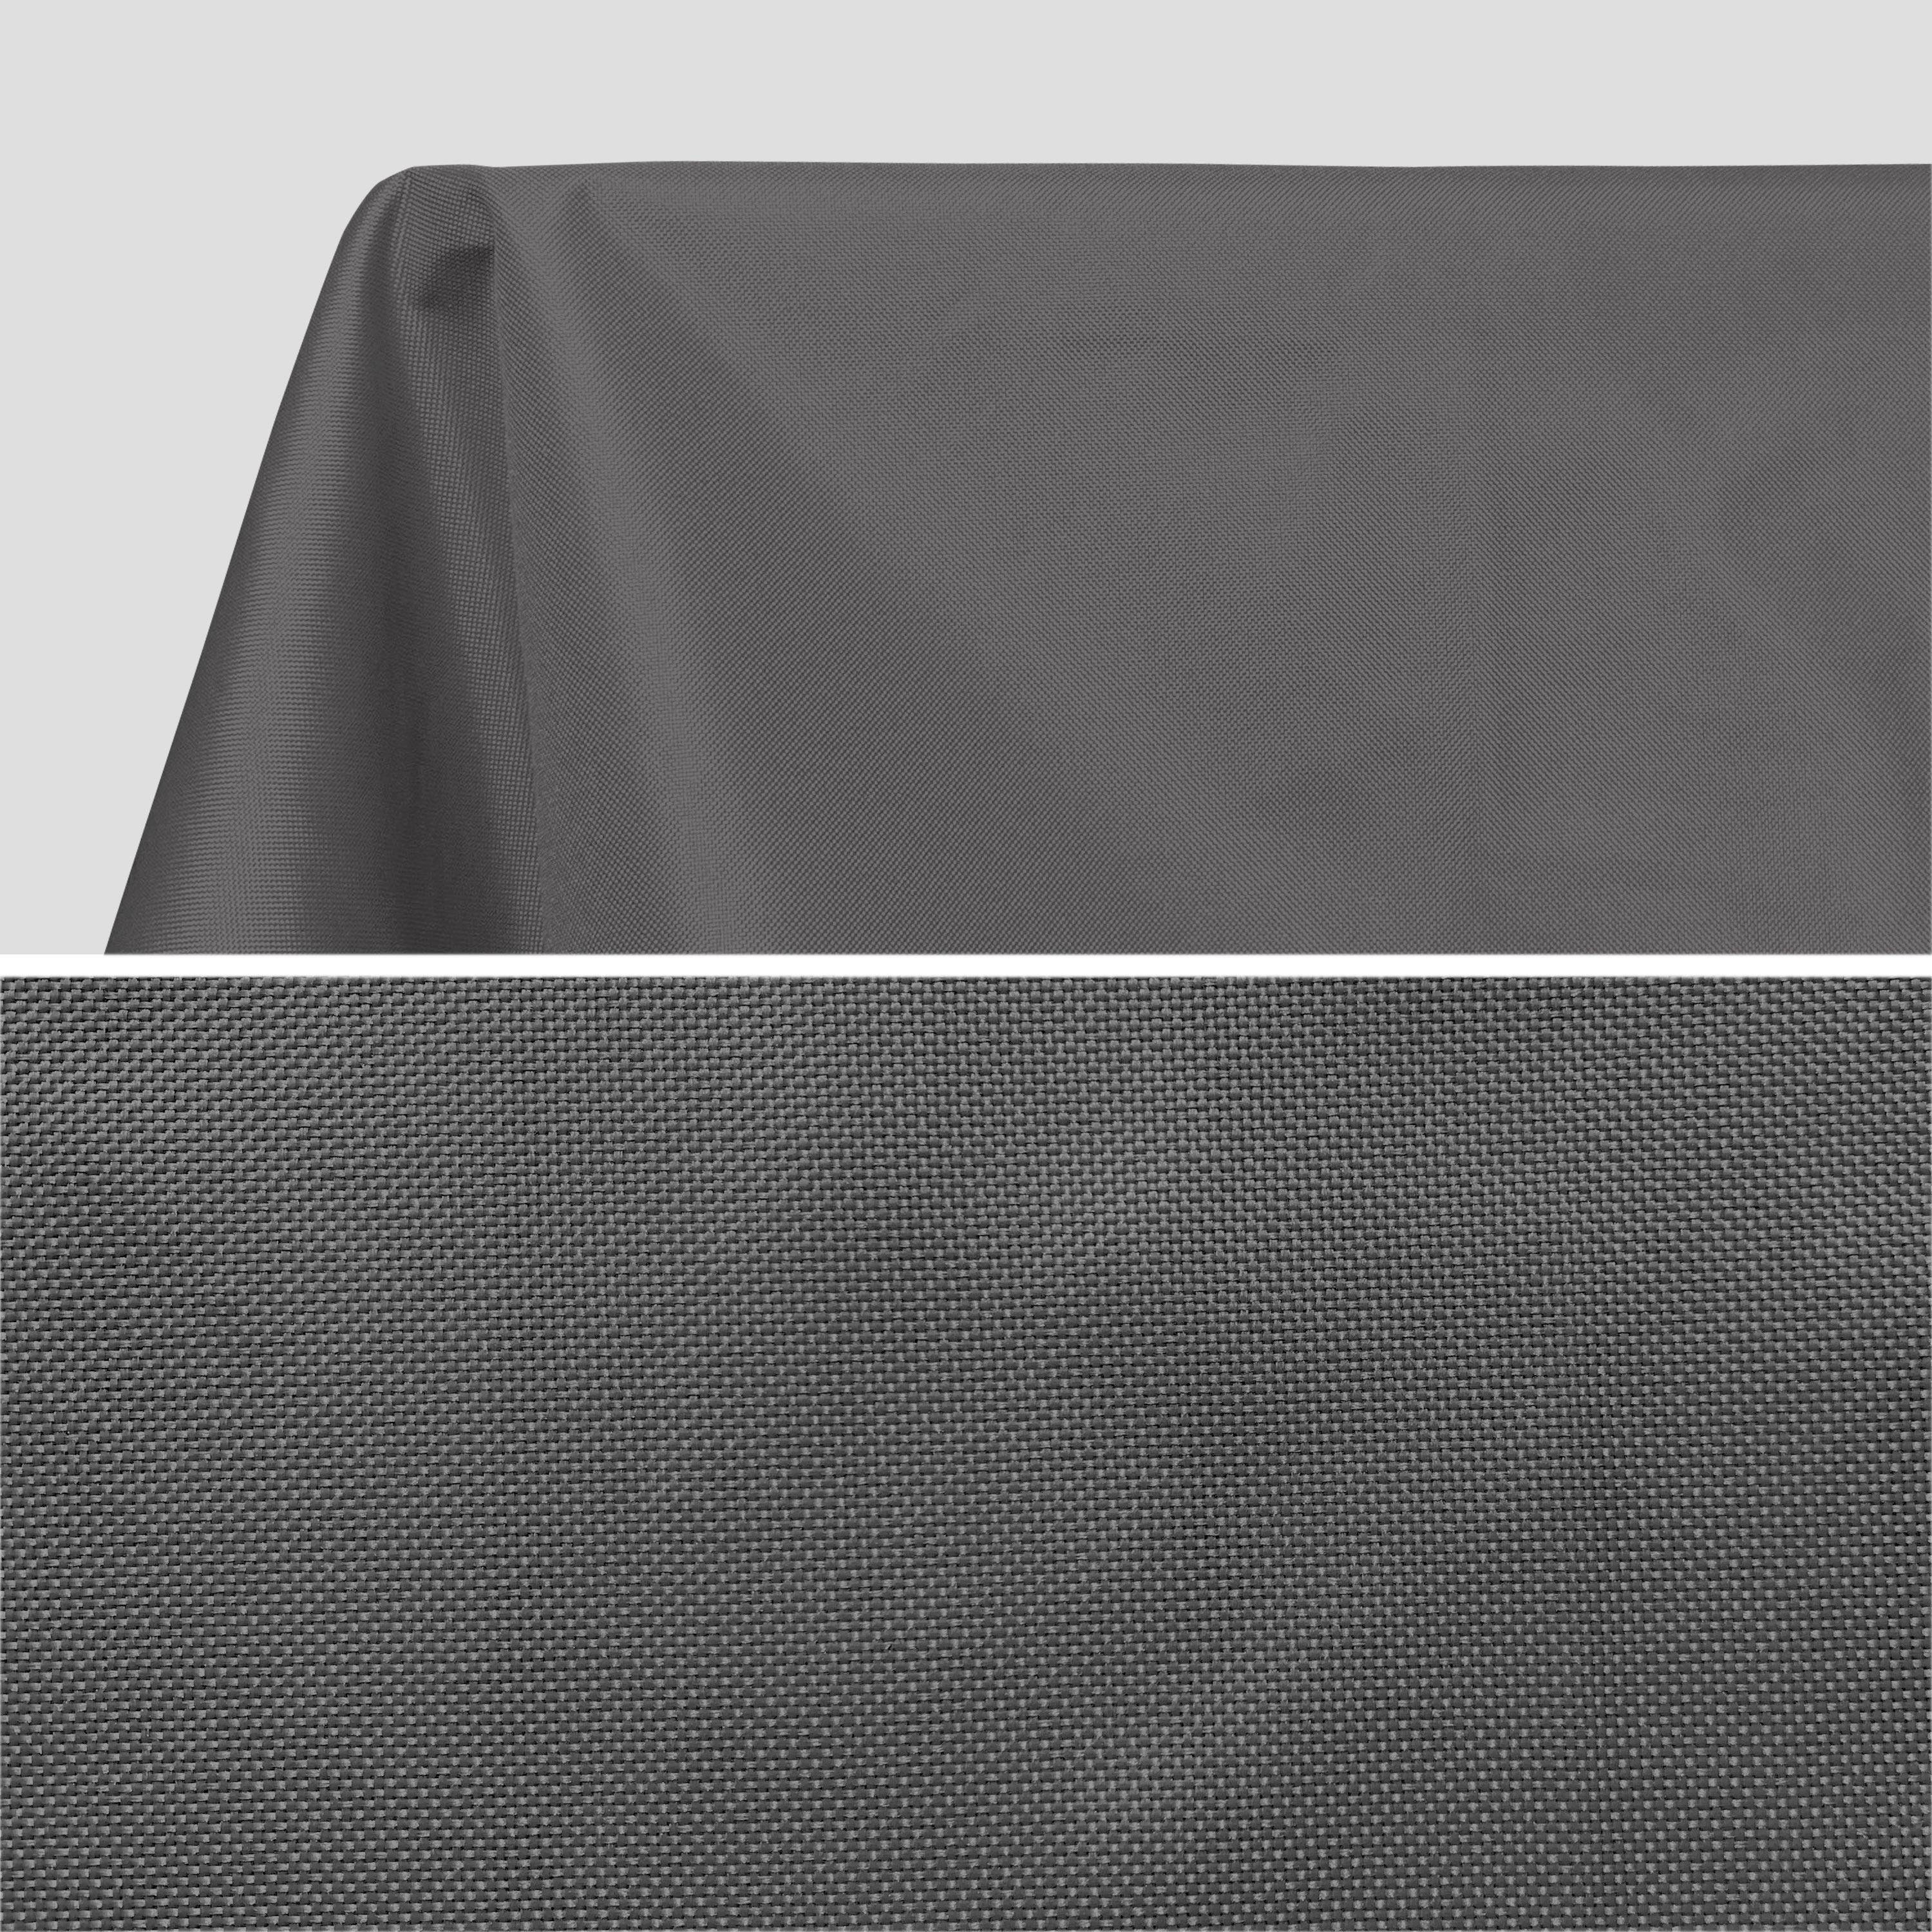 Kollektion HERITAGE - Outdoor-Tischdecke 300 x 140 cm Grau, 100% Polyester, schützt den Tisch, UV-Schutz, sommerlicher Stil Photo2